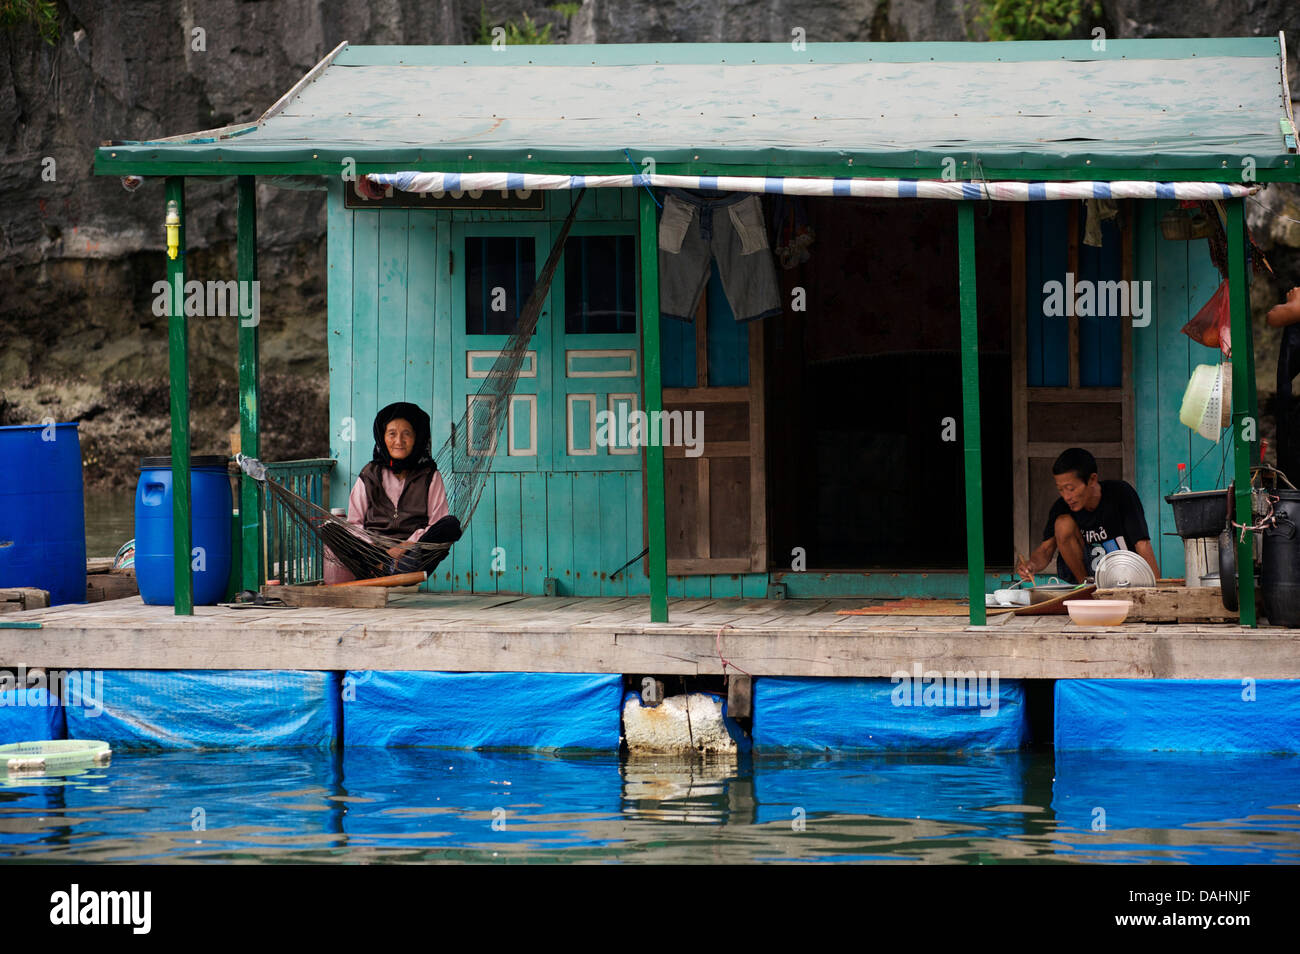 Maison flottante avec femme vietnamienne en hamac et man eating, Halong Bay, Vietnam Banque D'Images